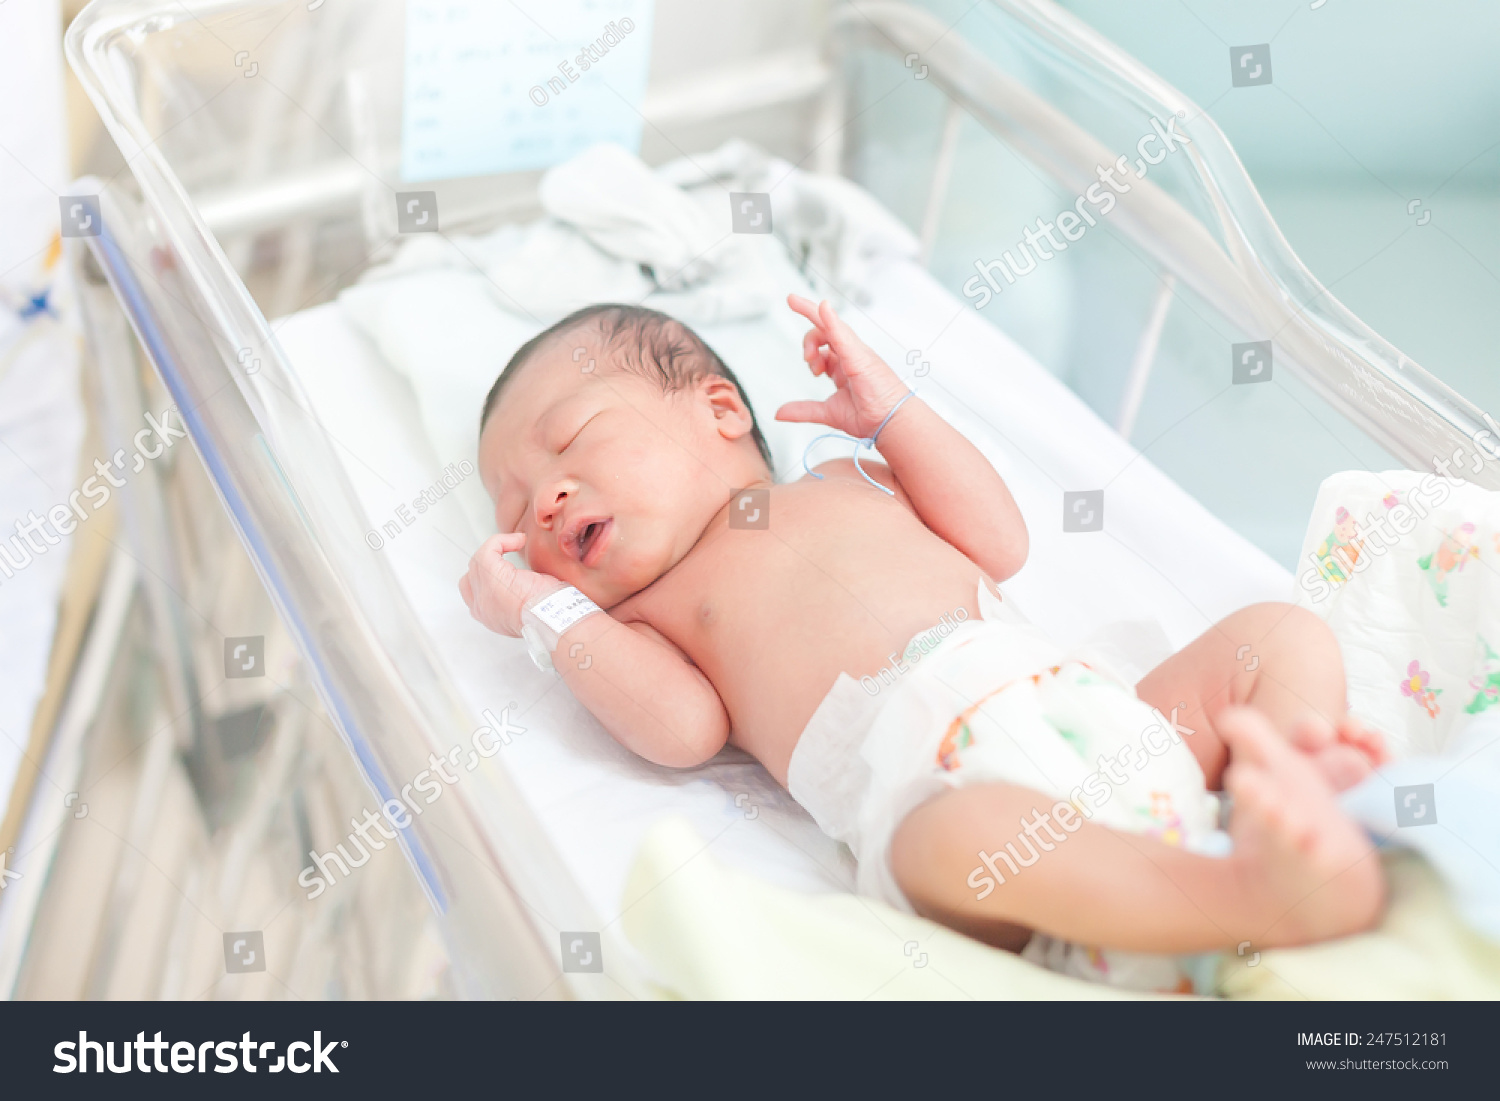 младенец 1 день жизни